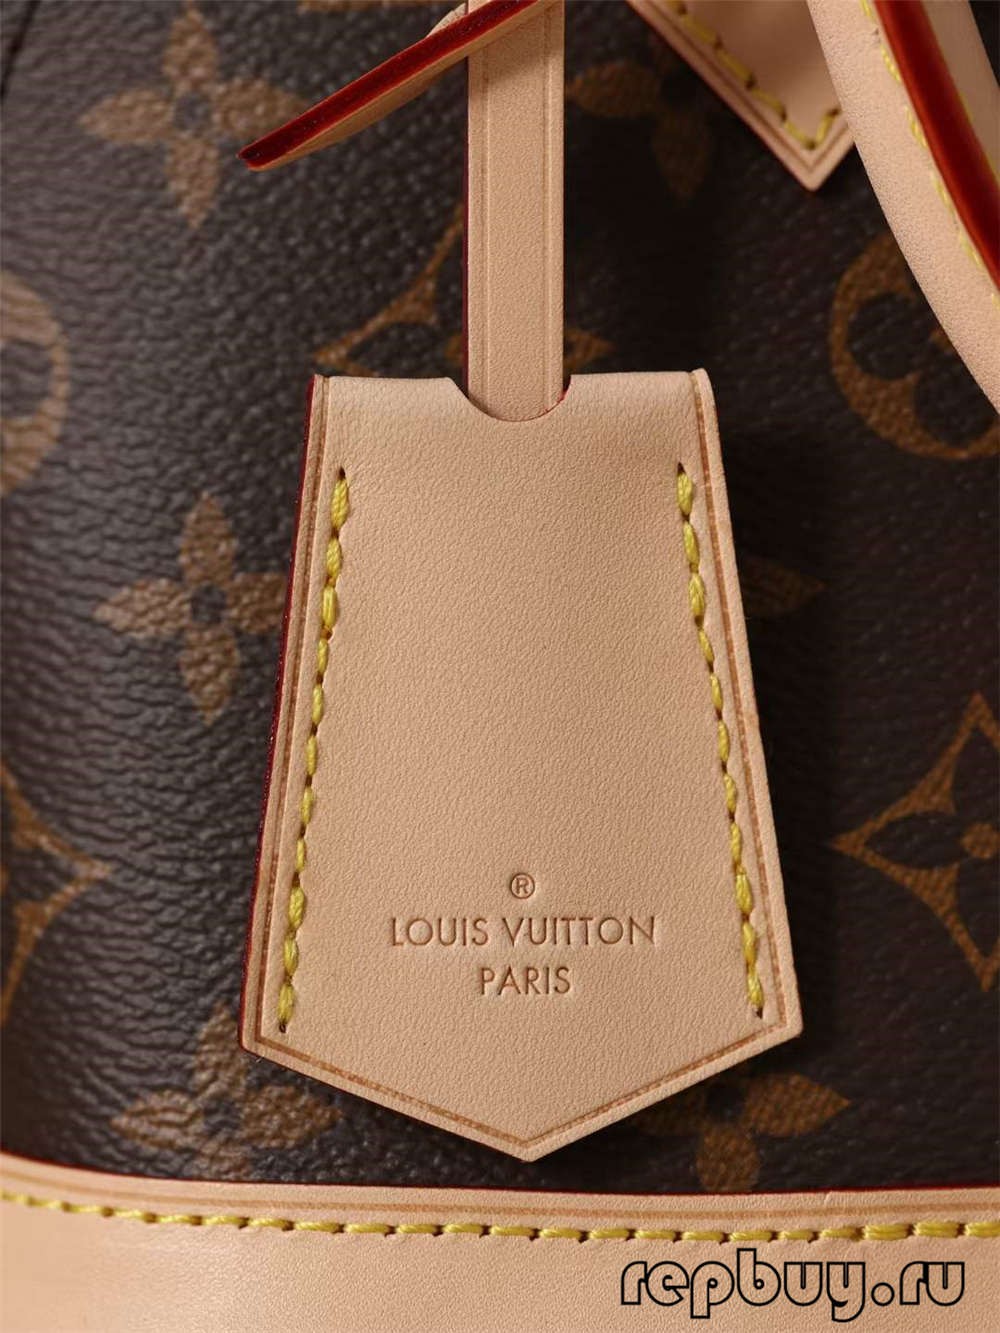 Louis Vuitton M53152 Alma BB tas replika kualitas luhur (2022 Husus) -Kualitas Best Kantong Louis Vuitton Toko Online, Réplika tas desainer ru